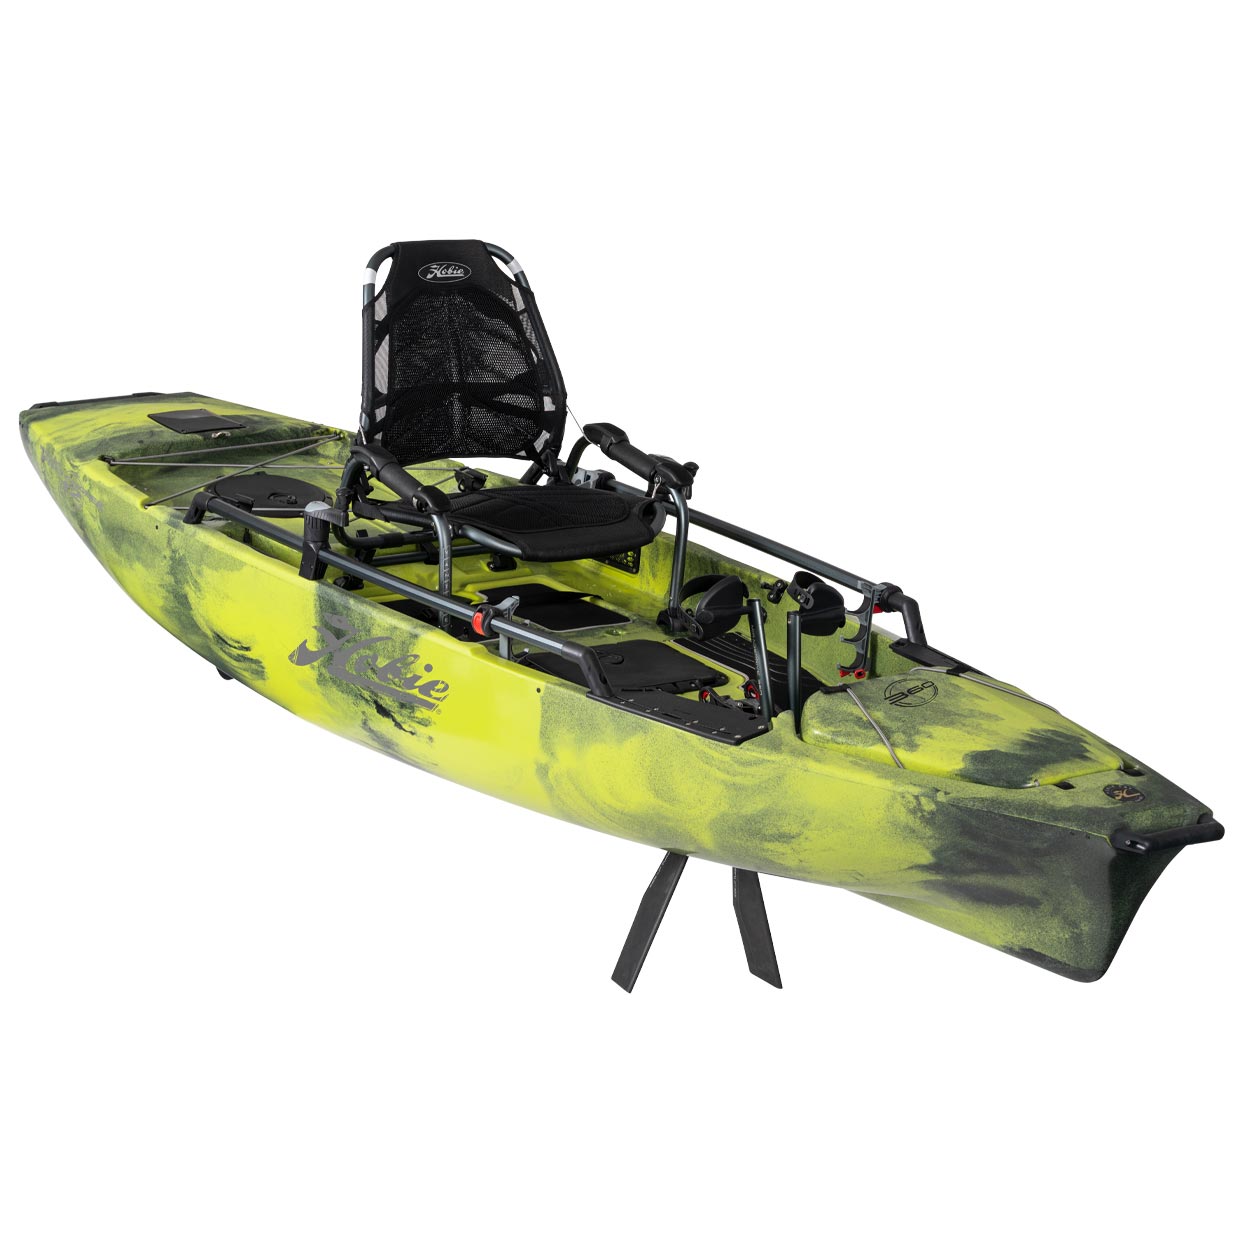 Hobie Cat Mirage Pro Angler 12 360 Camo Kayak – 2021